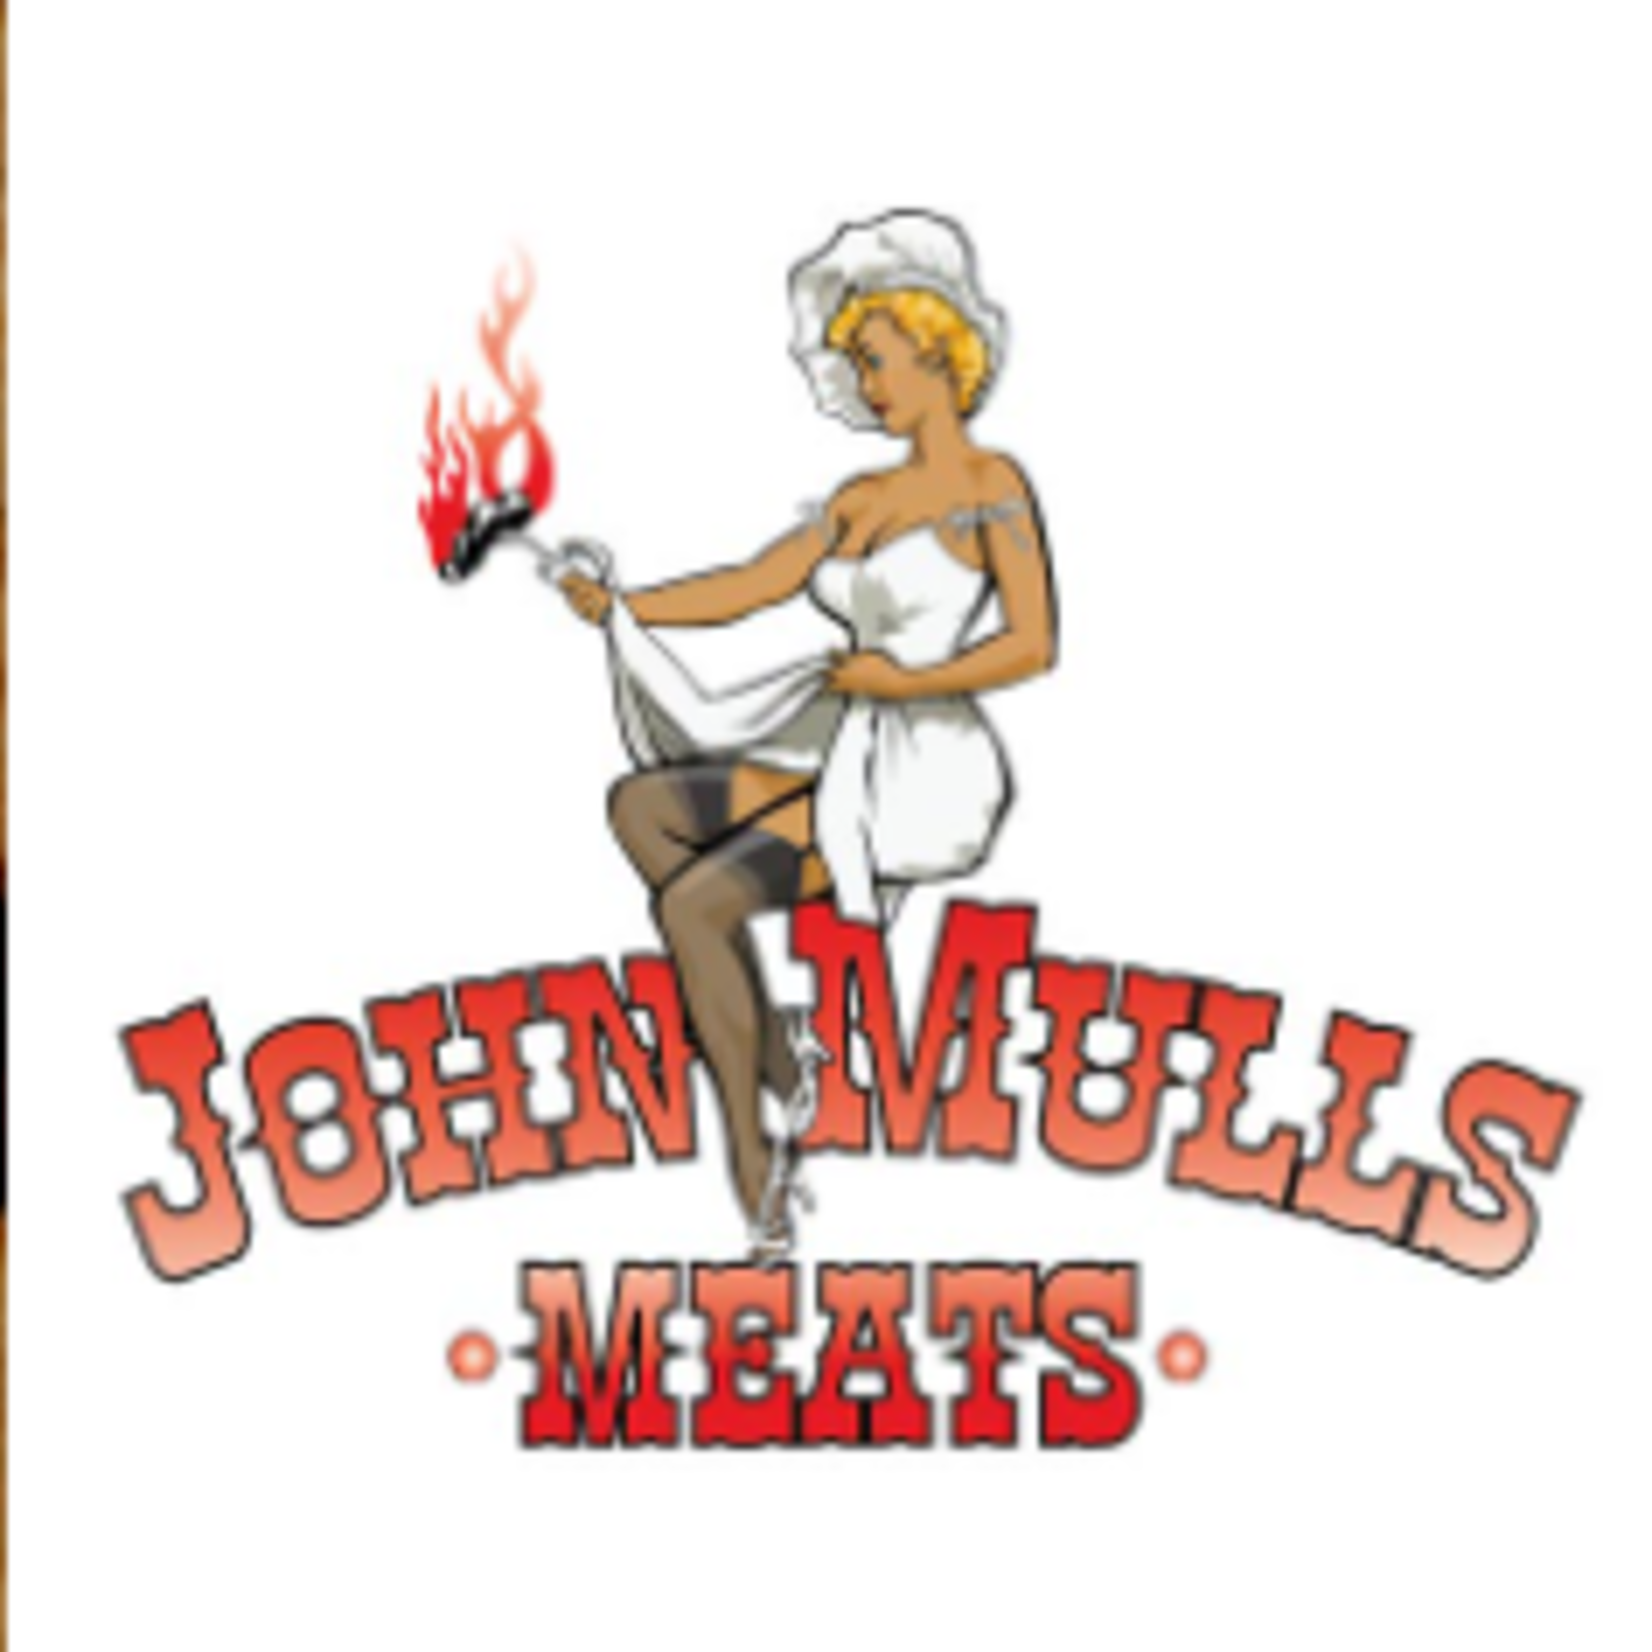 John Mulls Road Kill Grill John Mulls Road Kill Grill $25 - Menu Items (1 MAX PER SHOPPER)